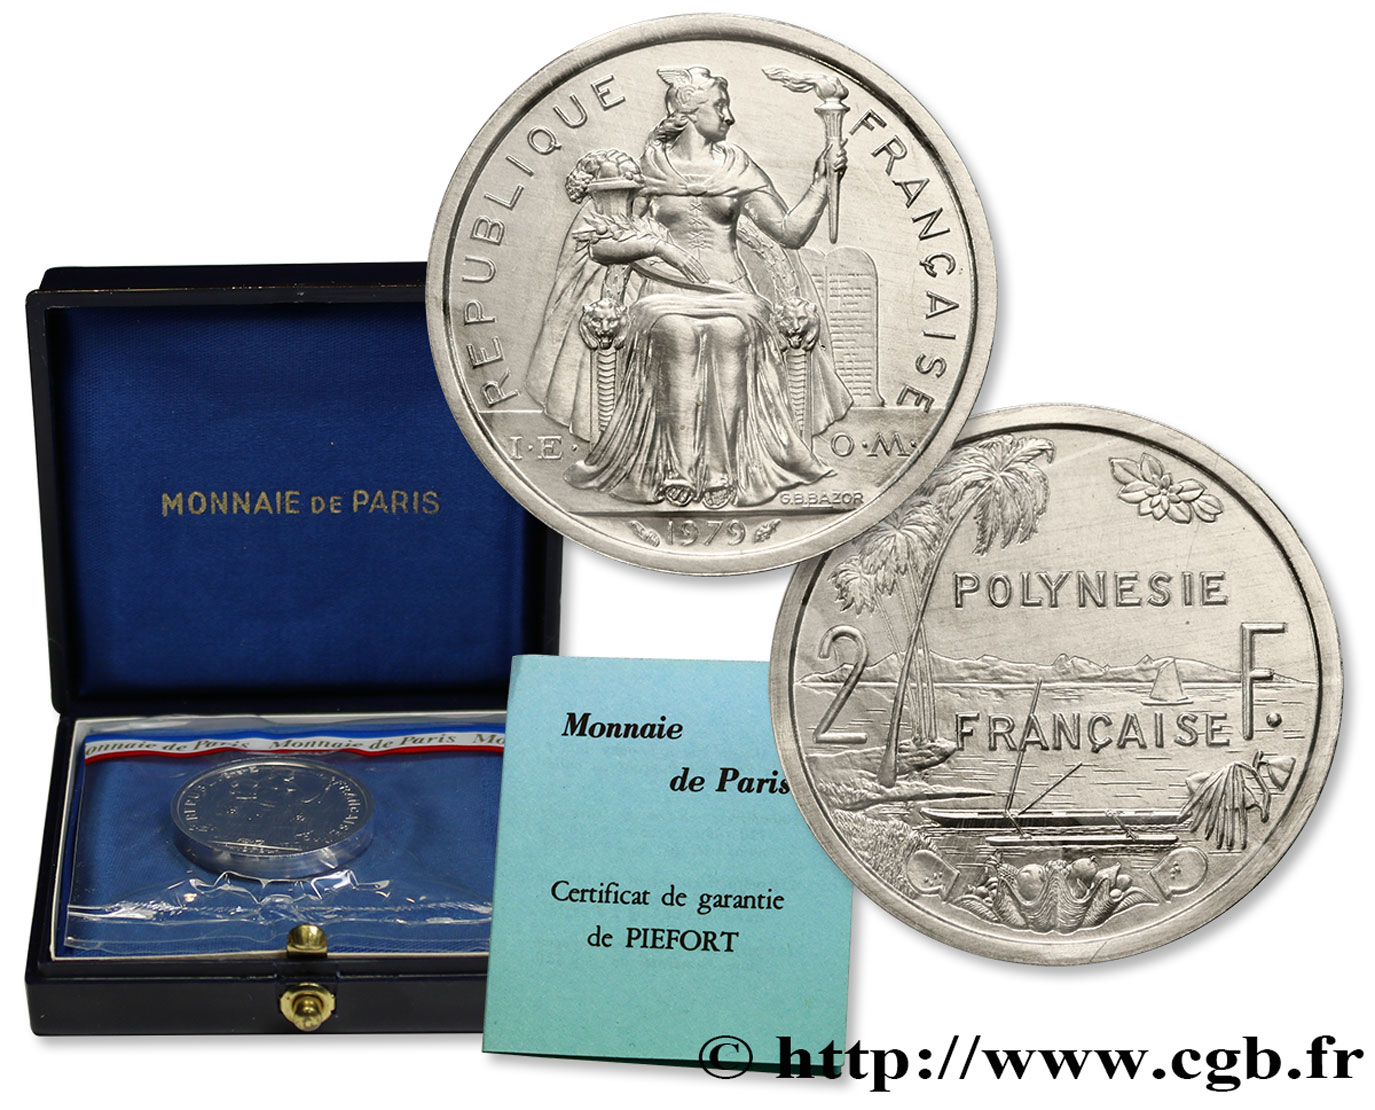 POLYNÉSIE FRANÇAISE Piéfort de 2 Francs I.E.O.M. 1979 Paris FDC 